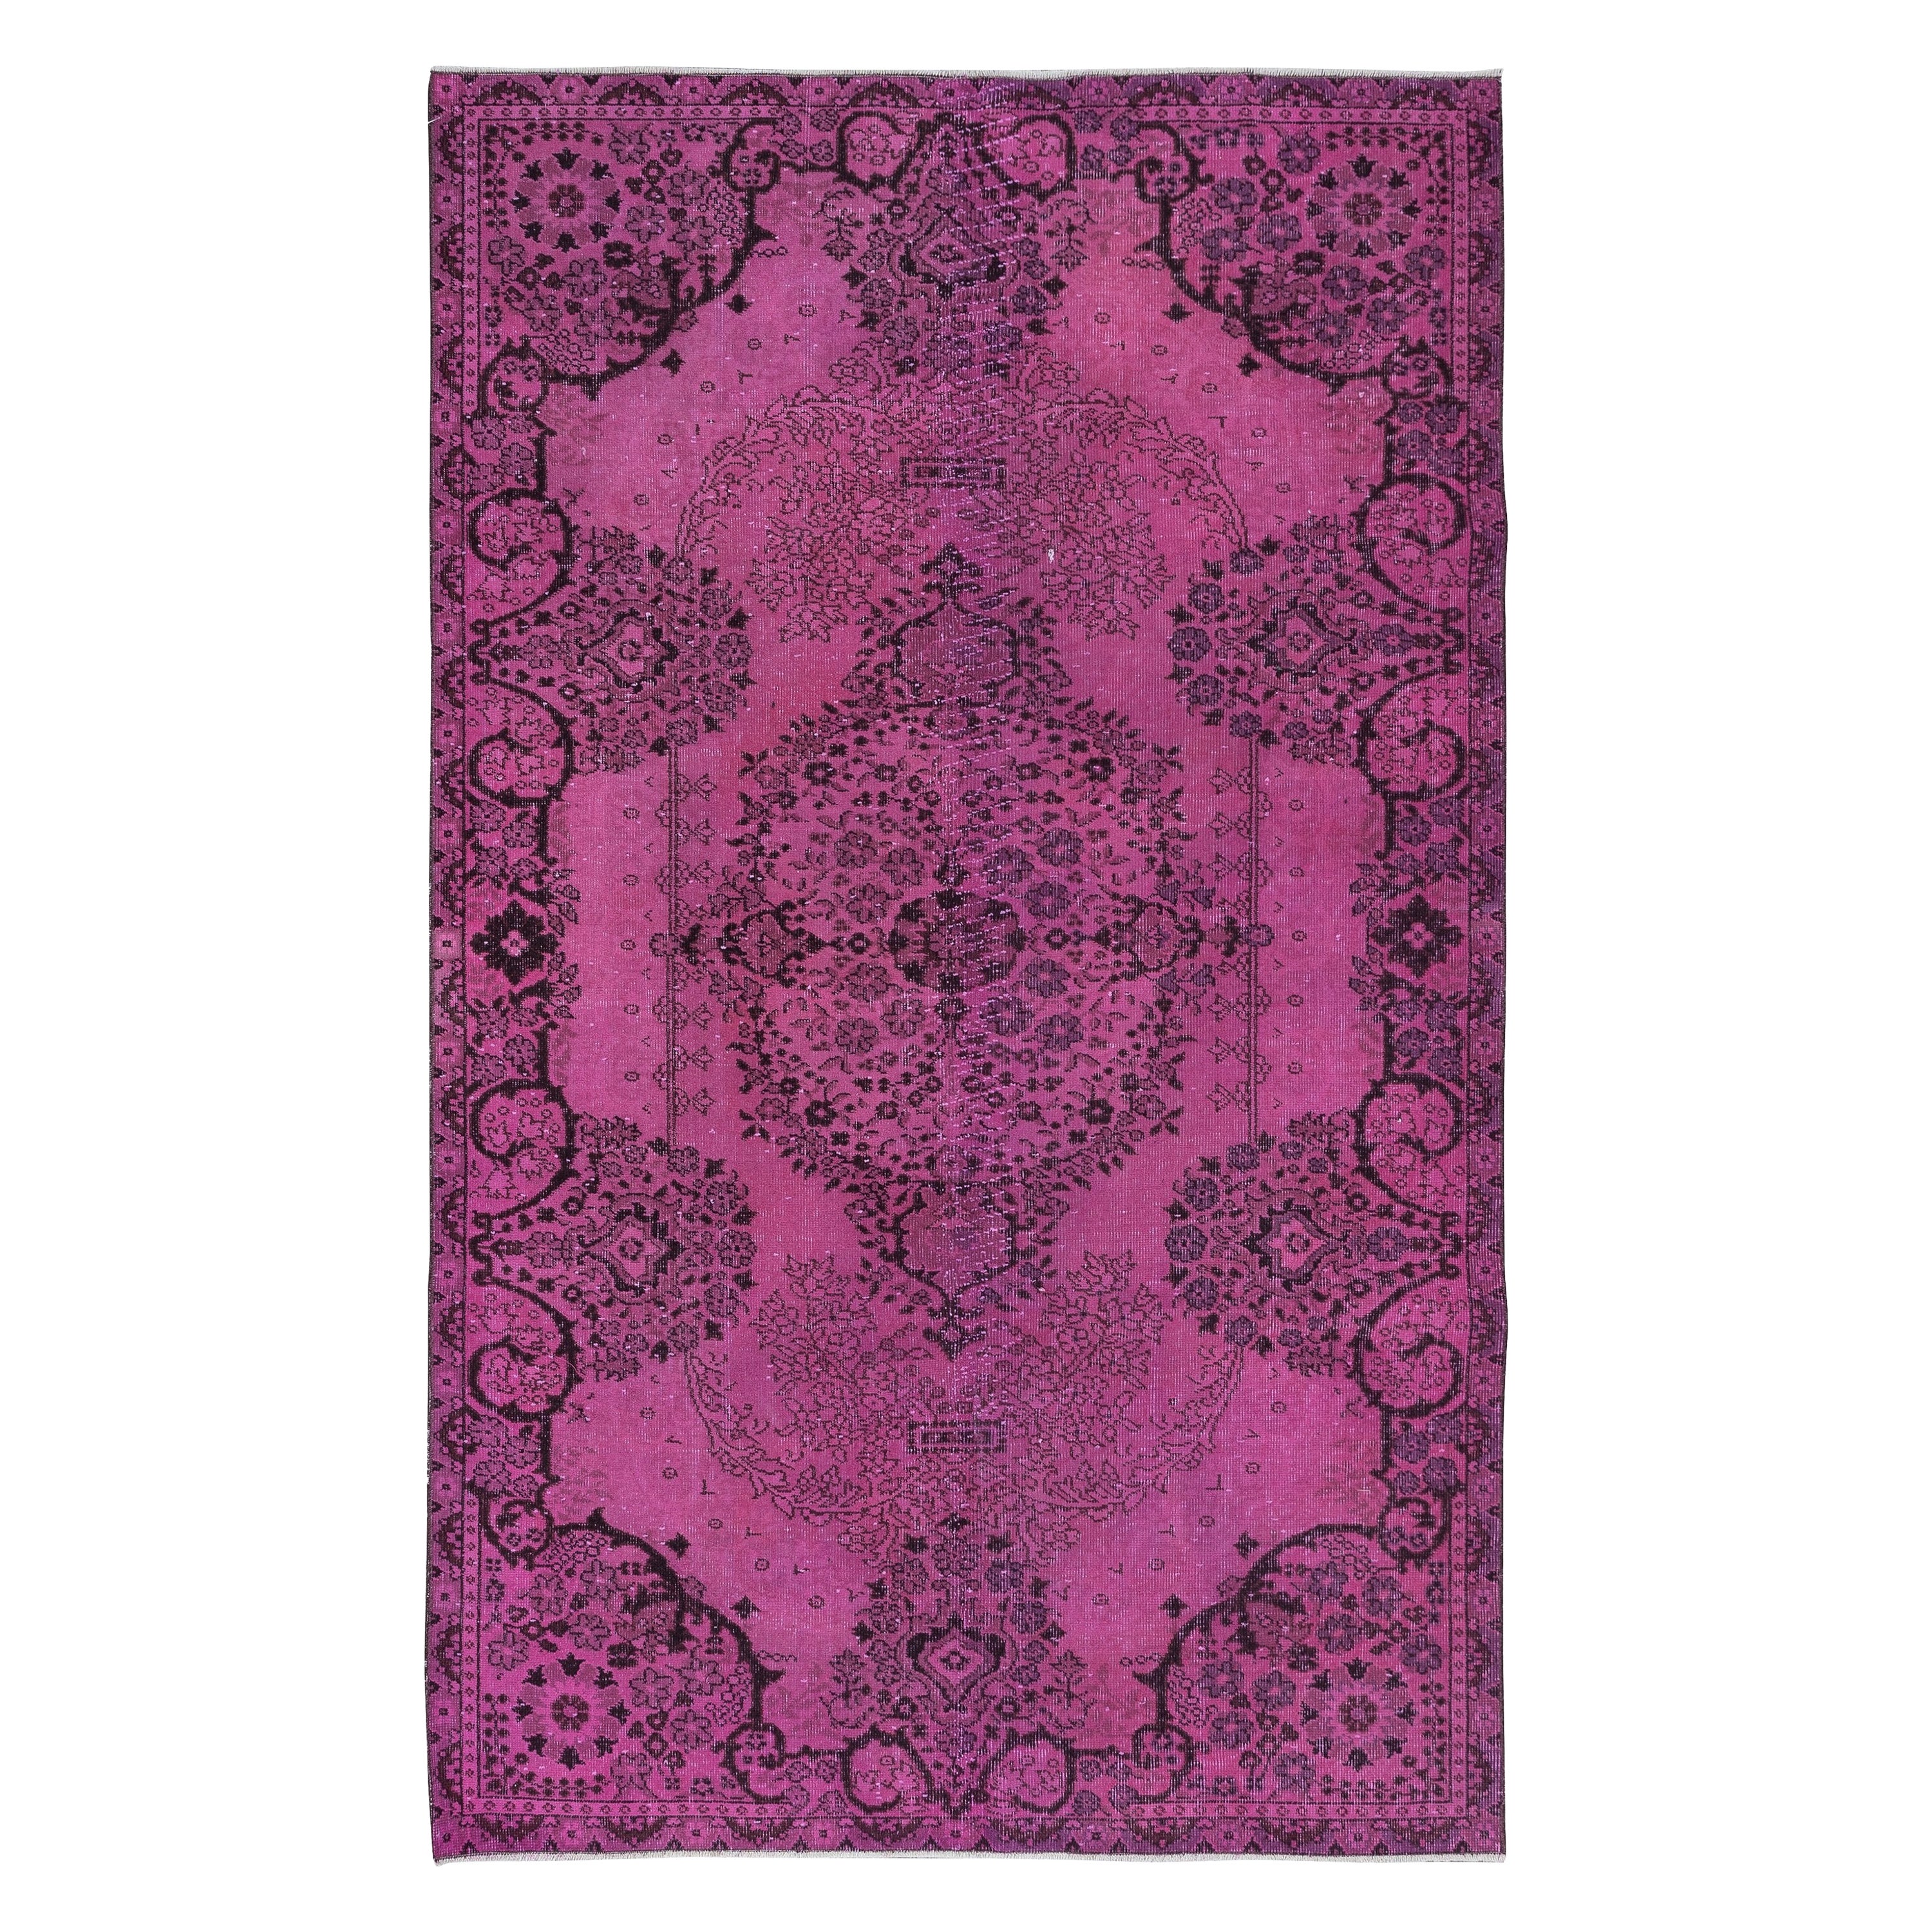 Dekorativer rosa Teppich 5.3x8,5 Ft für moderne Inneneinrichtung, handgeknüpft in der Türkei